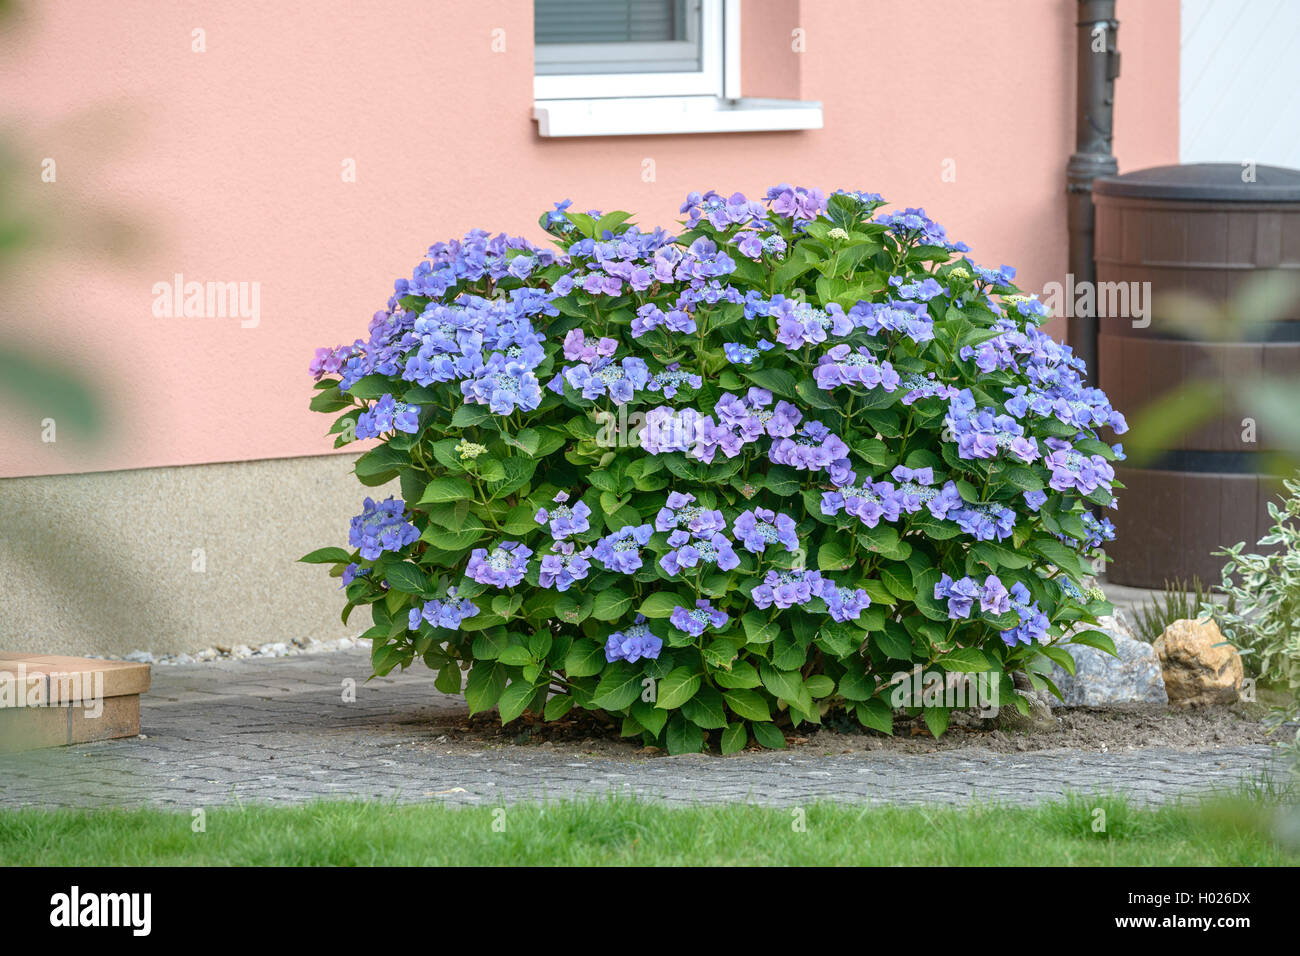 Hortensia jardin dentelle, cap hortensia (Hydrangea macrophylla 'Blaumeise', Hydrangea macrophylla Blaumeise), le cultivar Blaumeise, Allemagne Banque D'Images